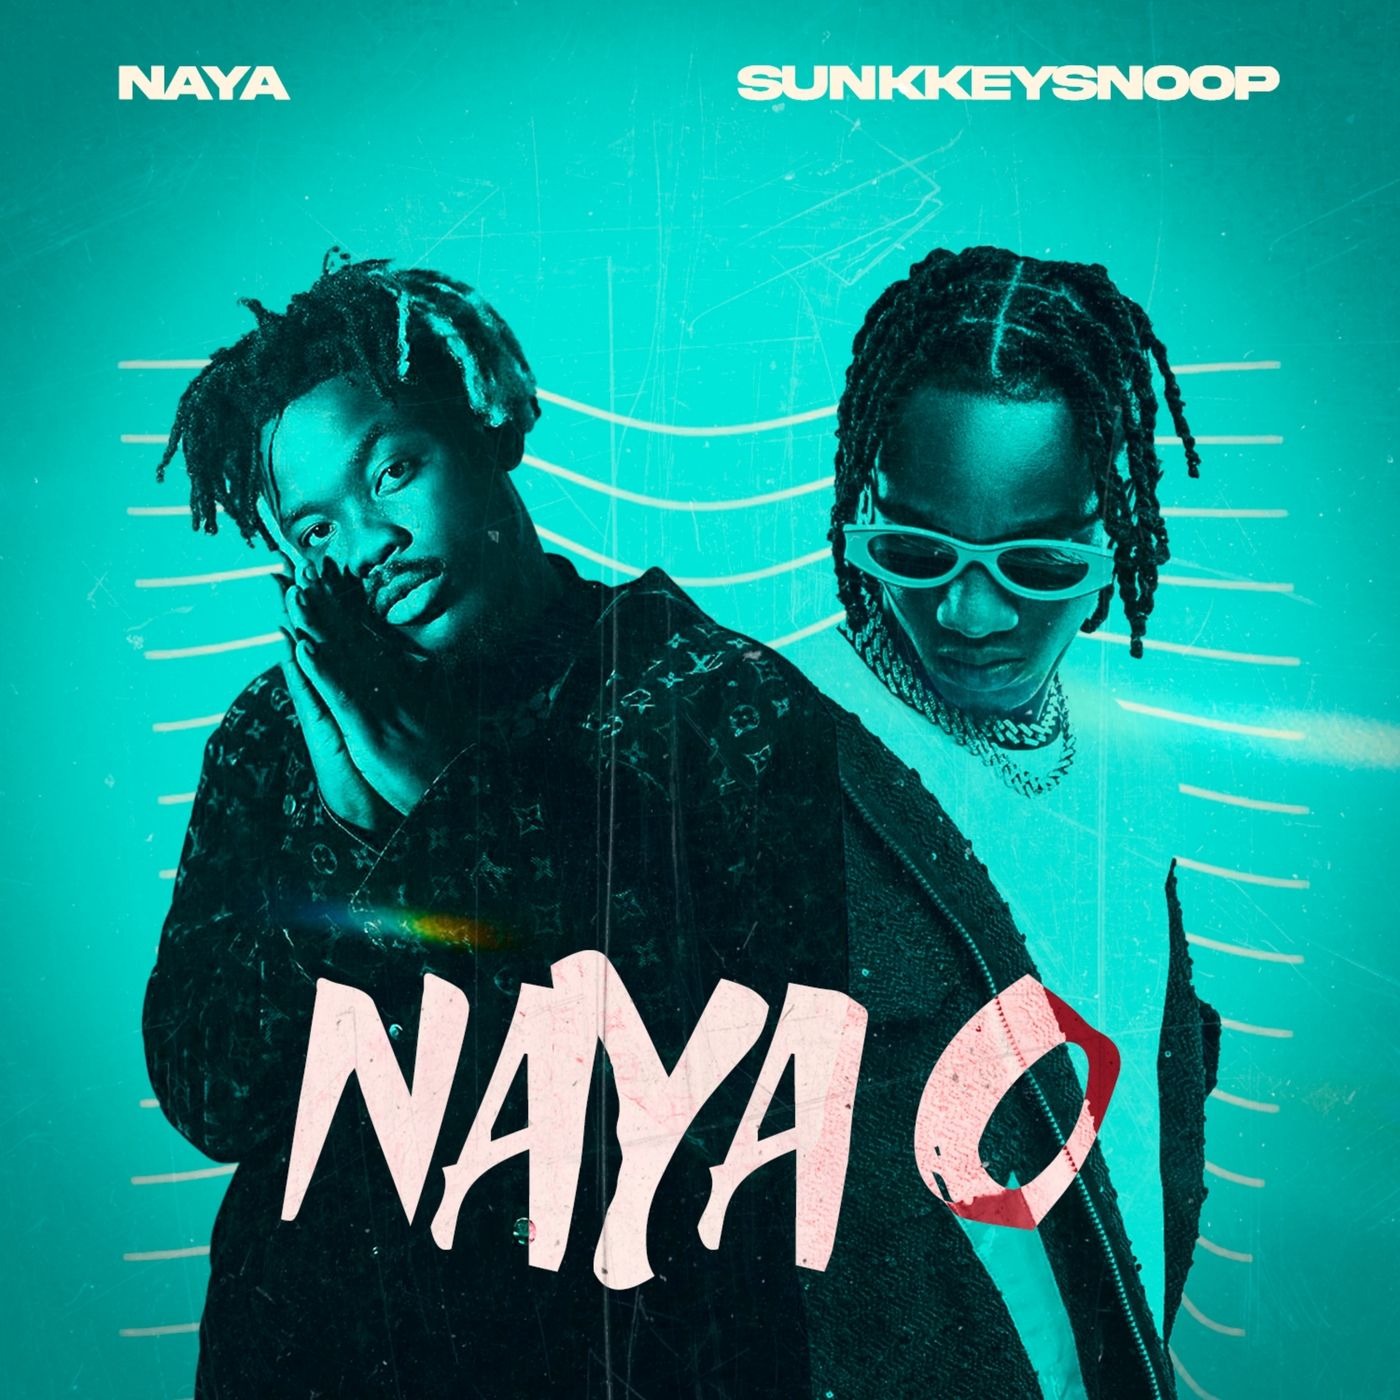 Naya - Naya O Ft. SunkkeySnoop